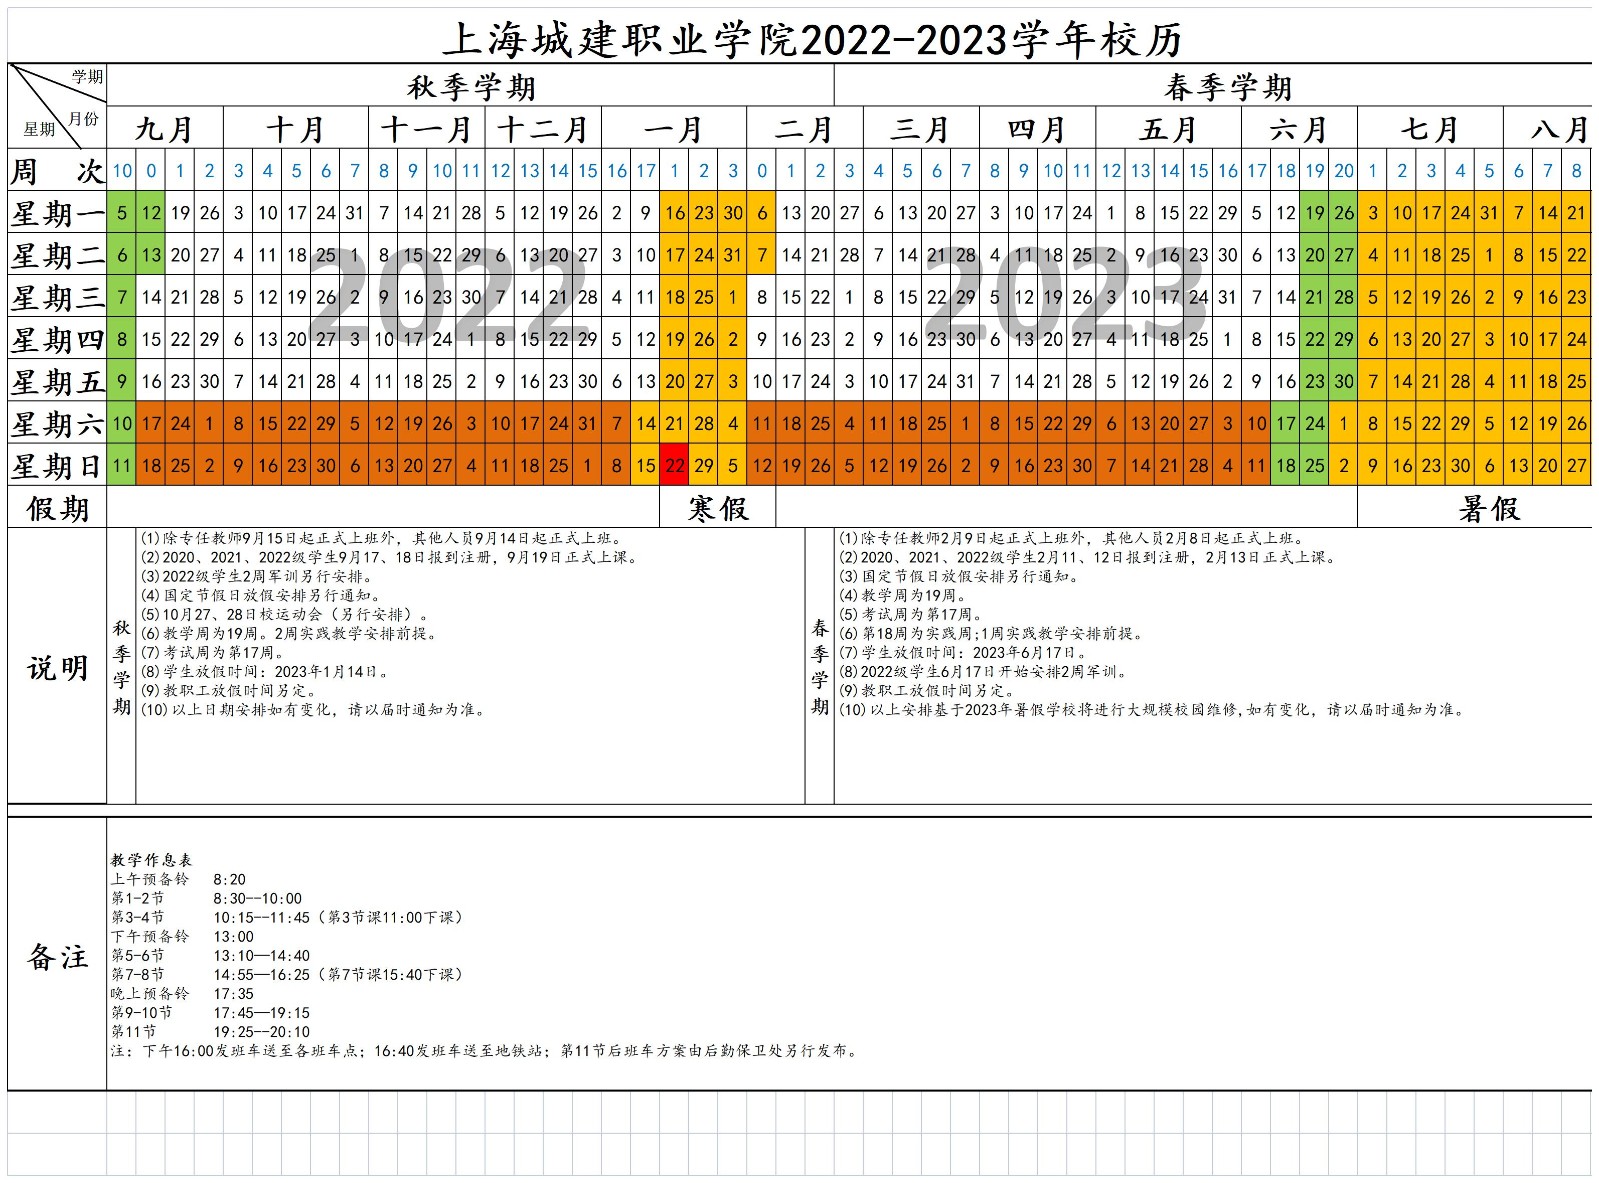 2022-2023学年校历（公布版）_2022-2023学年校历.jpg